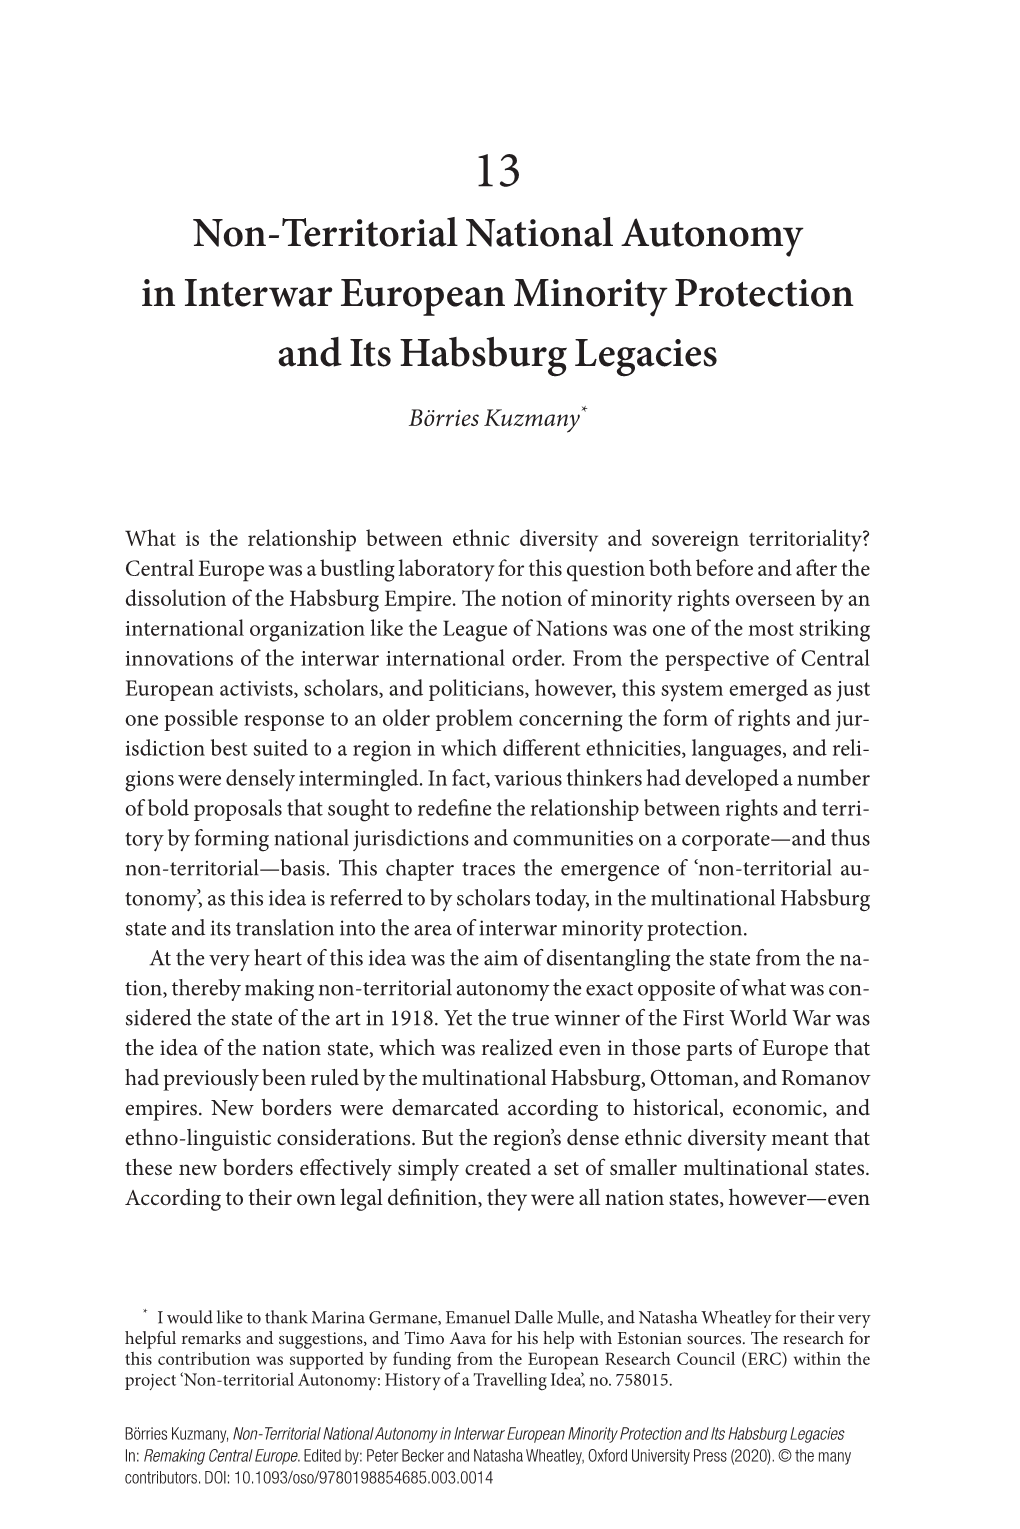 Non- Territorial National Autonomy in Interwar European Minority